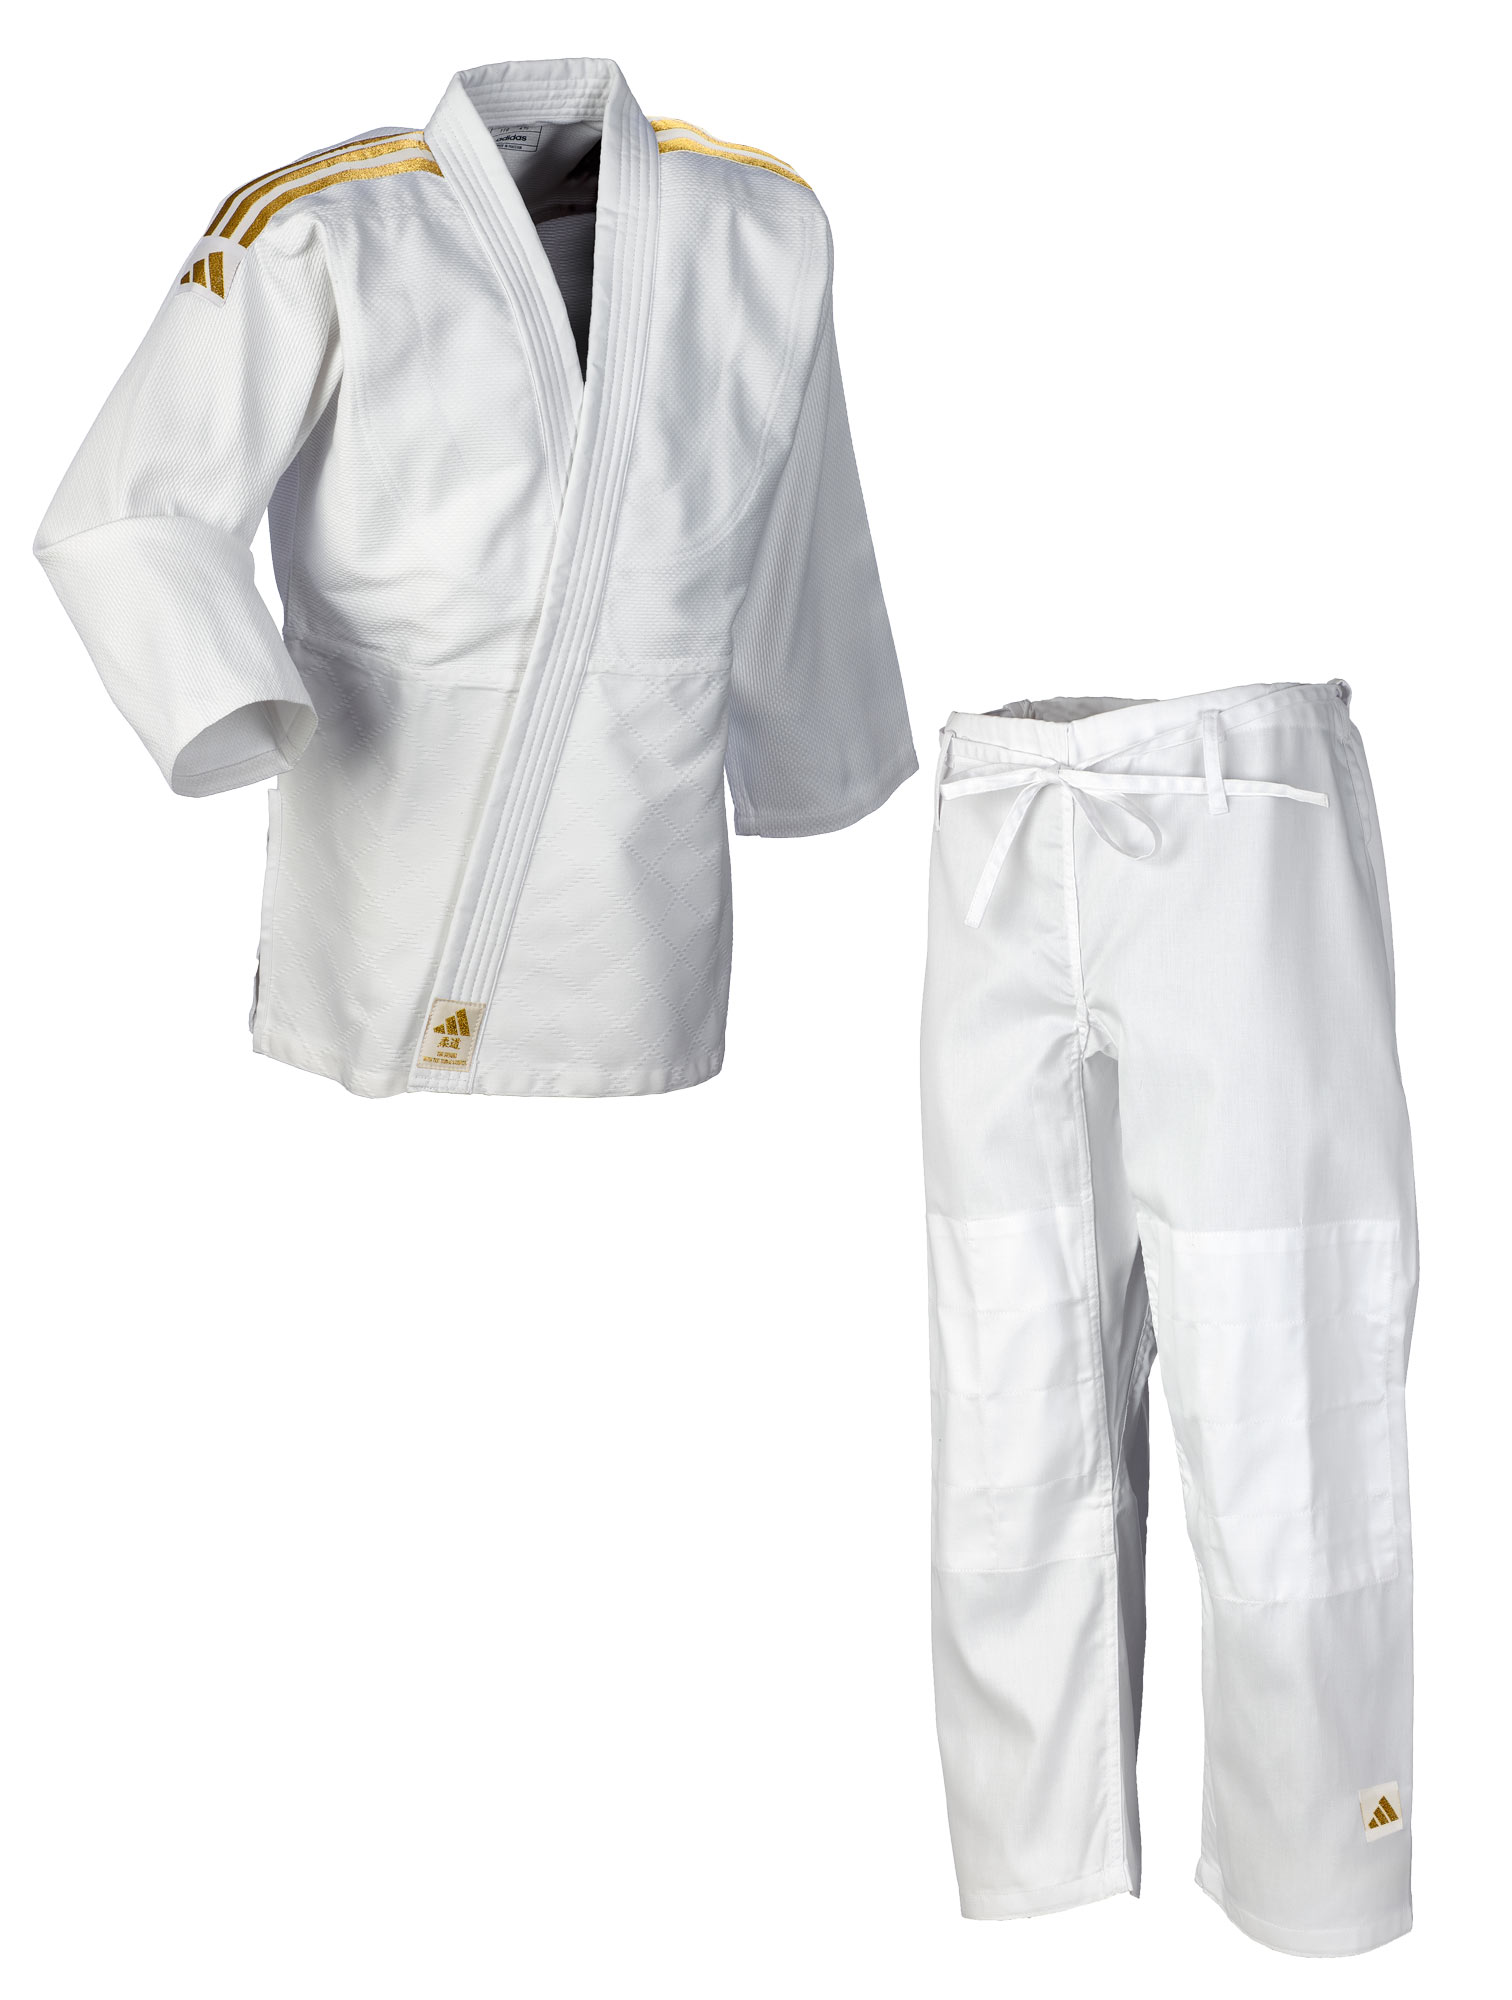 adidas Judo-Anzug Club weiß/goldene Streifen, J350